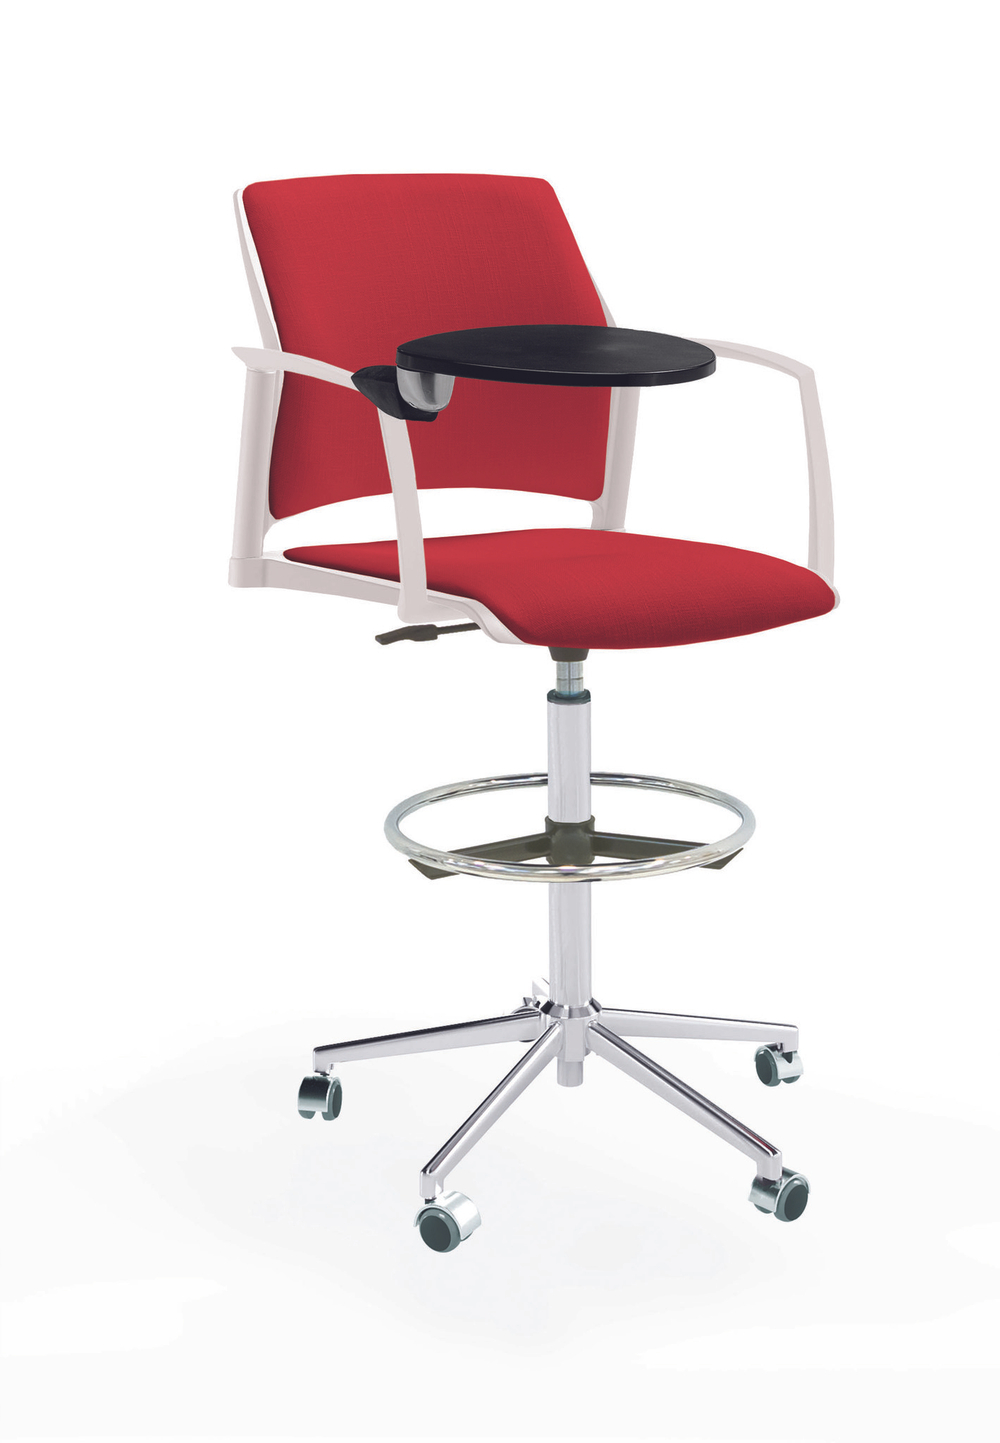 Кресло Rewind каркас хром, пластик белый, база стальная хромированная, с закрытыми подлокотниками и пюпитром, сиденье и спинка красные